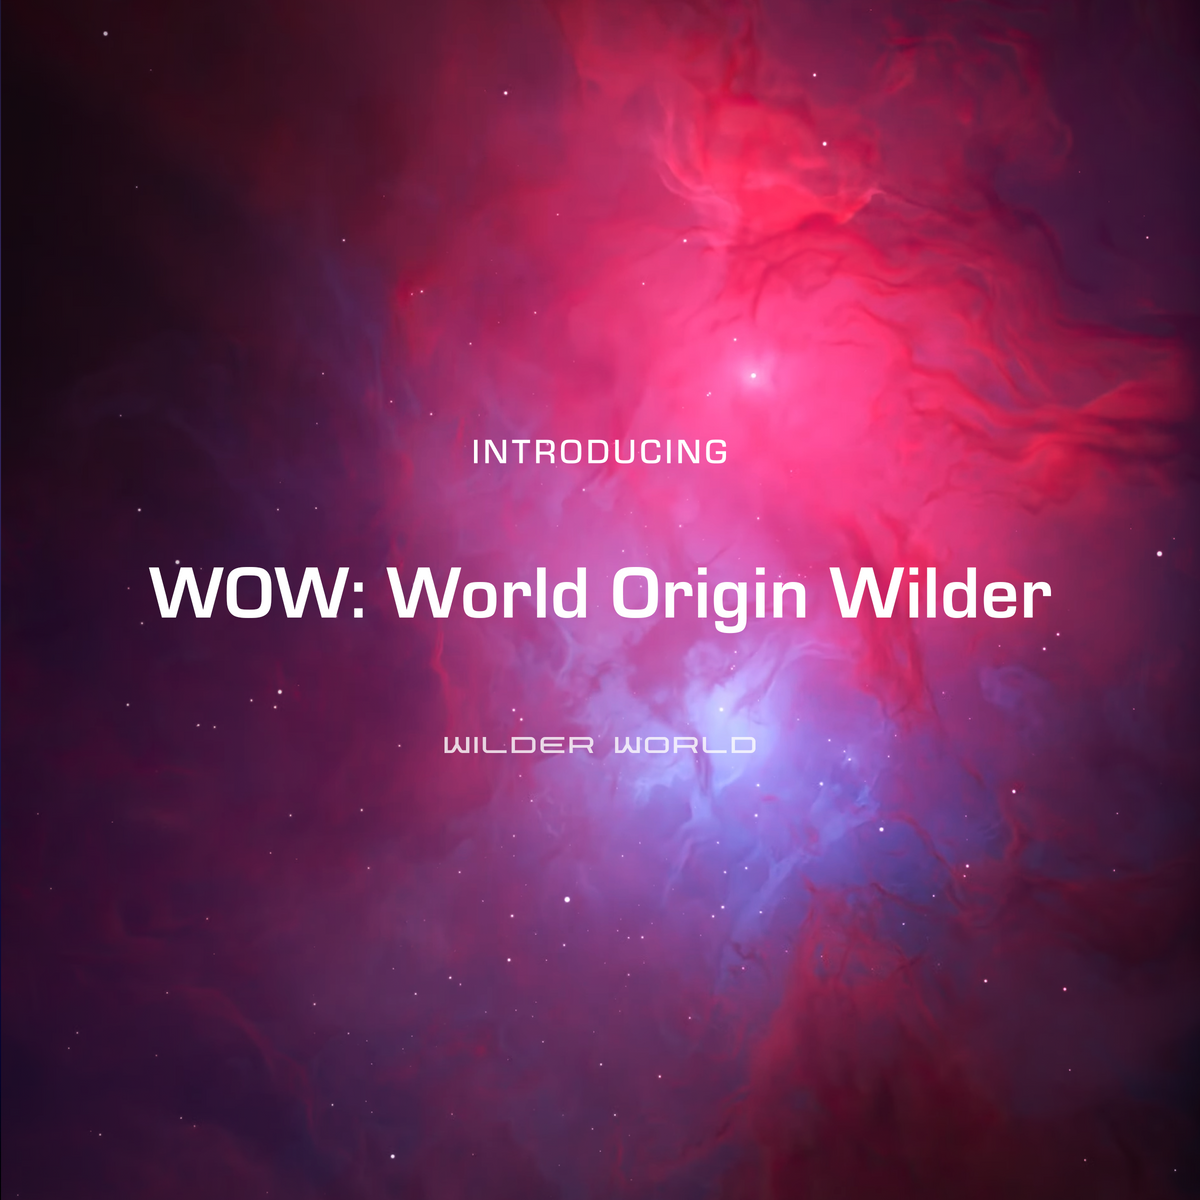 WOW: World Origin Wilder